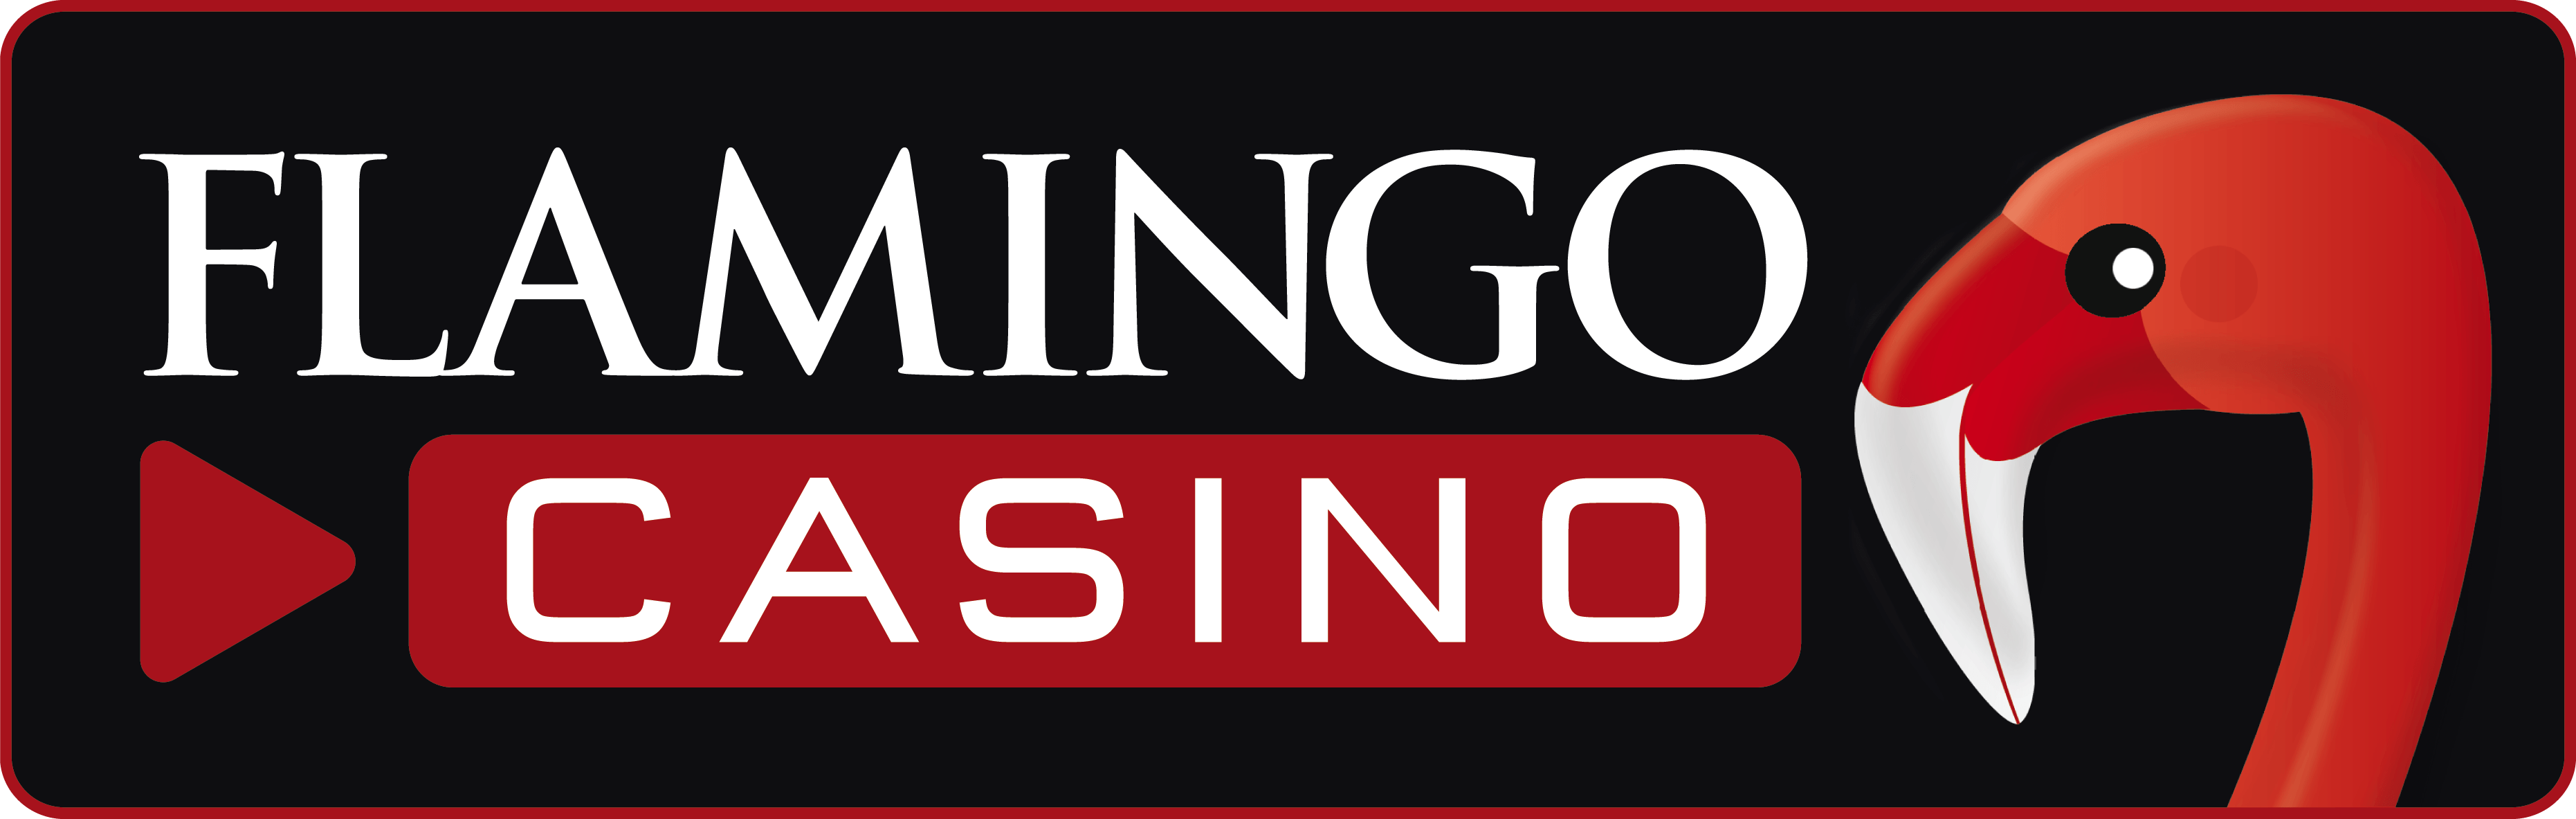 Flamingo Casino Logo - Customers & References - REAC